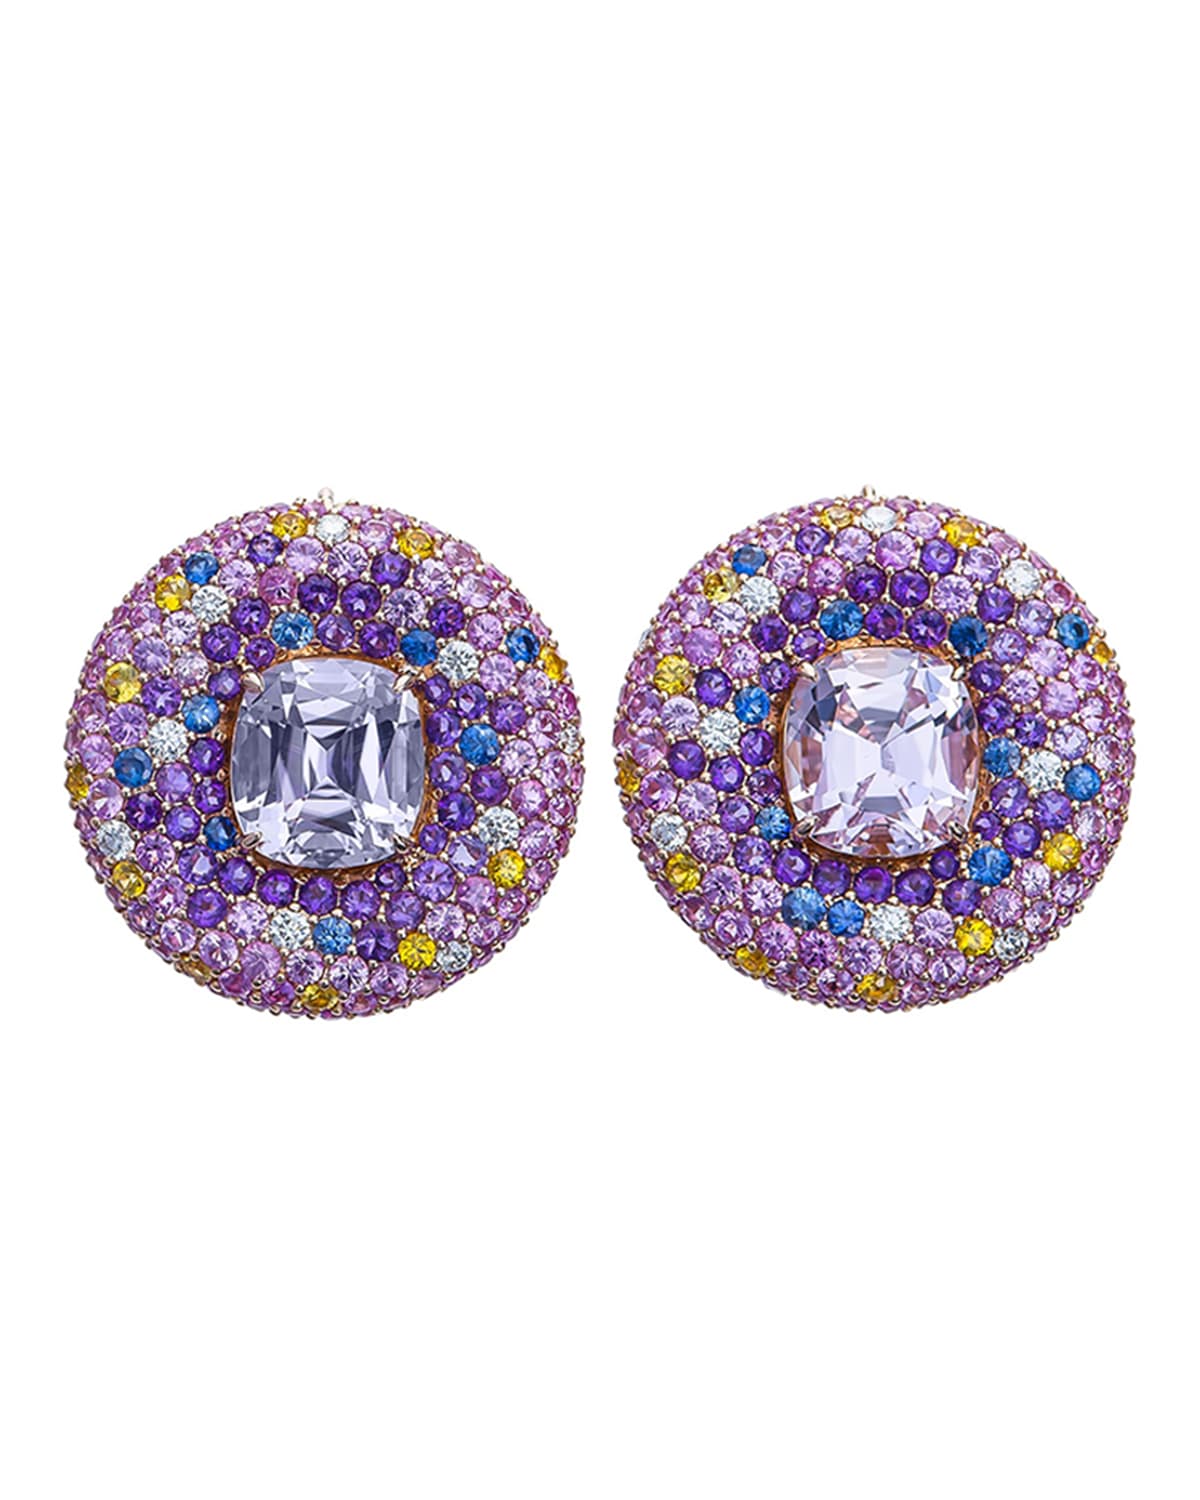 Margot McKinney Jewelry 18k Kunzite Button Earrings